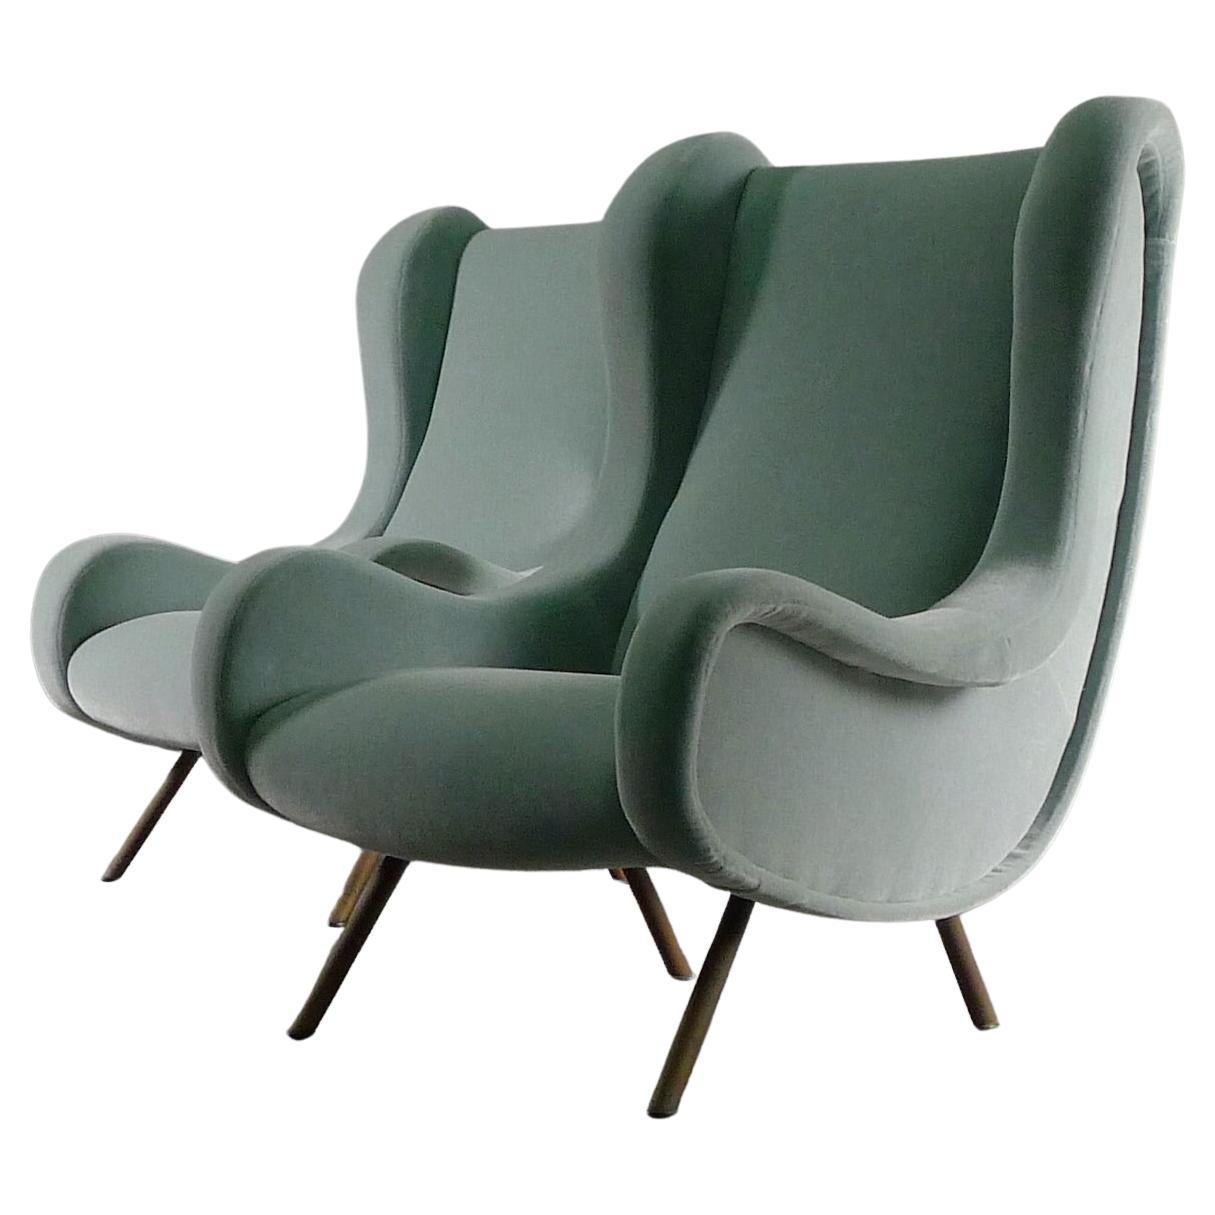 Marco Zanuso, paire de chaises pour seniors, conçues à l'origine en 1951, ces exemplaires datant probablement de la fin des années 1950/début des années 1960 et fabriqués par Arflex.  Accompagné d'une paire de poufs assortis.

Les chaises ont été